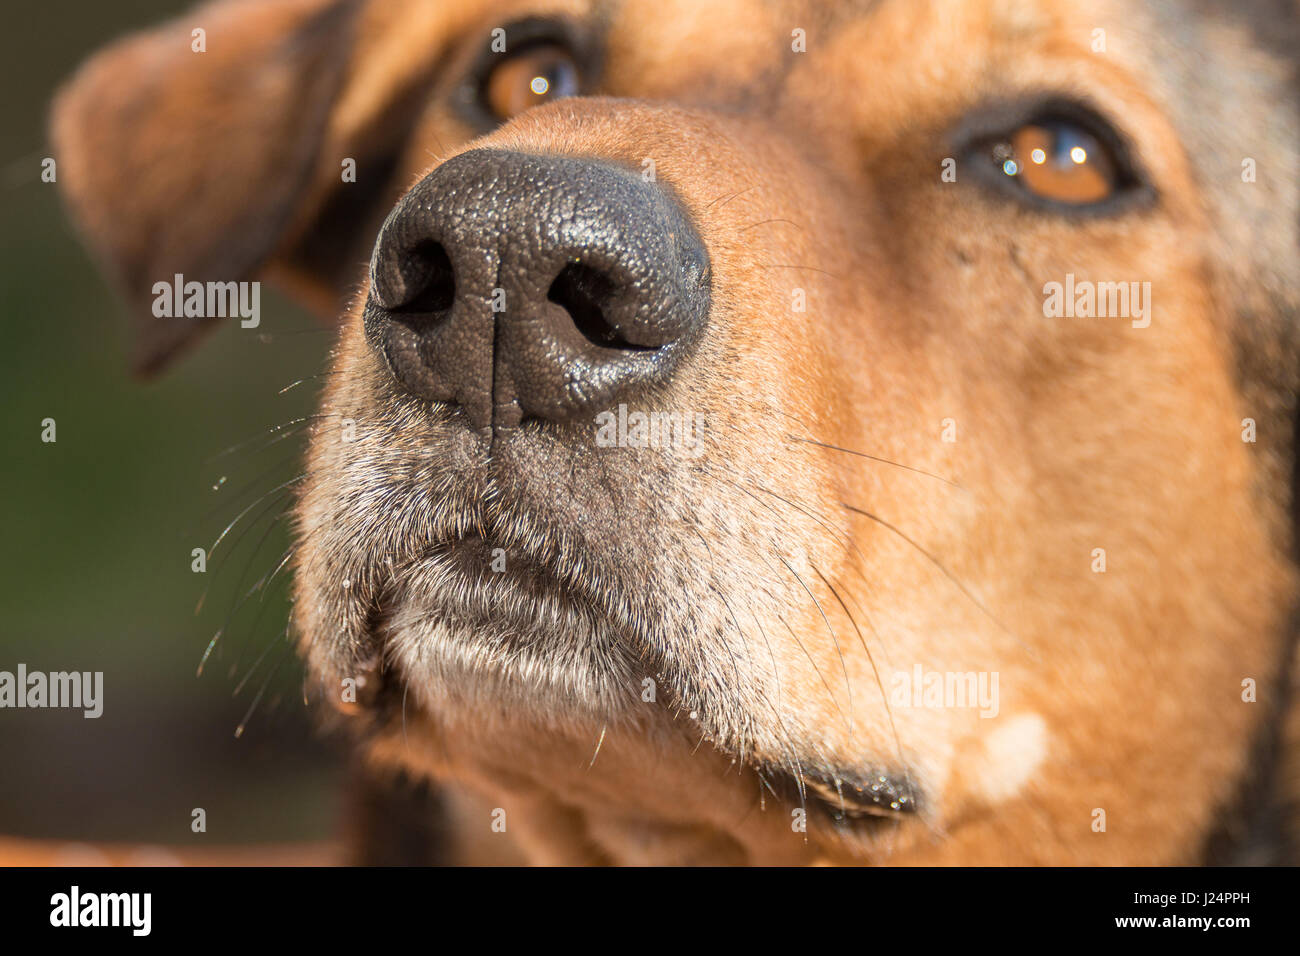 Retrato de un perro de caza- se centran en la nariz Foto de stock